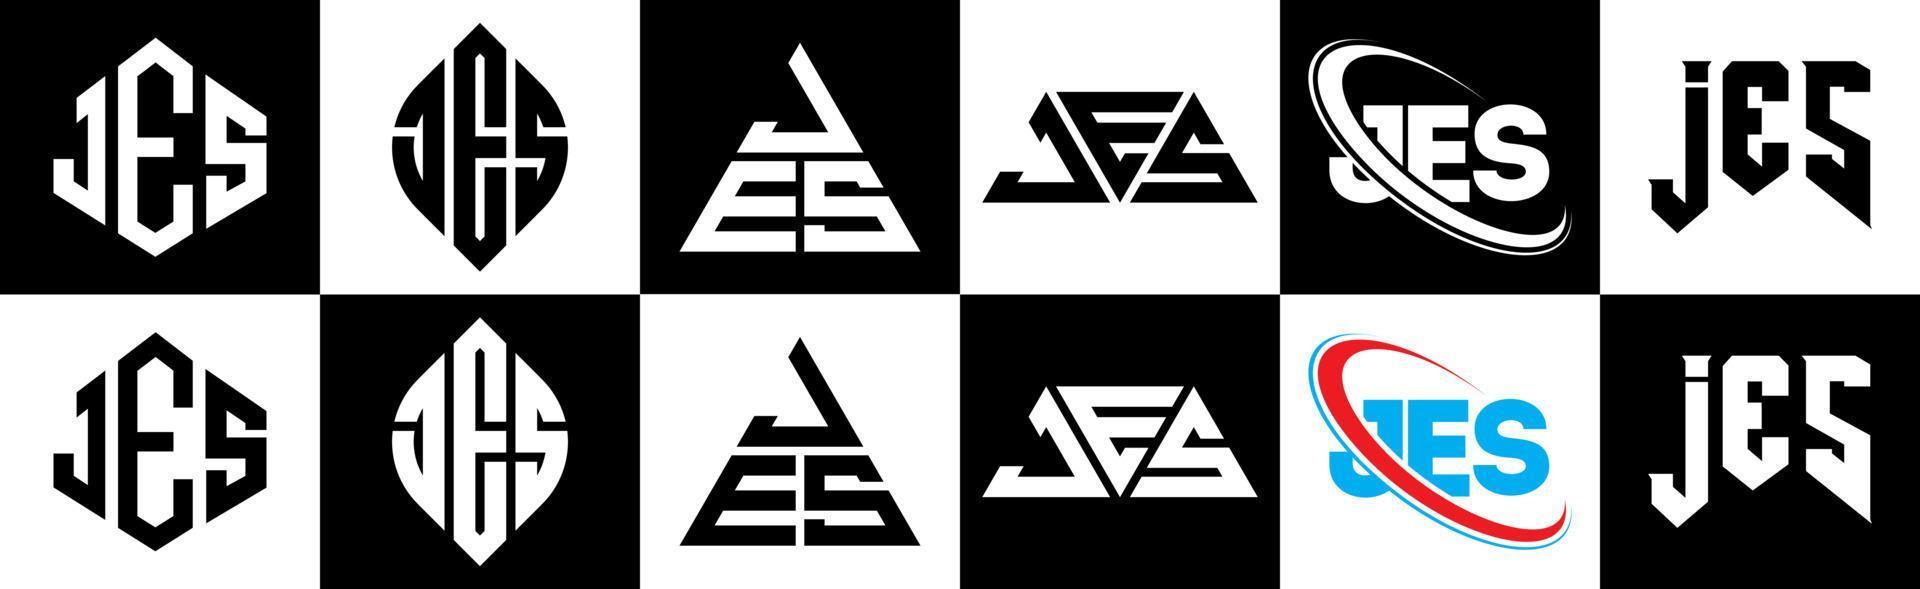 création de logo de lettre jes en six styles. jes polygone, cercle, triangle, hexagone, style plat et simple avec logo de lettre de variation de couleur noir et blanc dans un plan de travail. jes logo minimaliste et classique vecteur